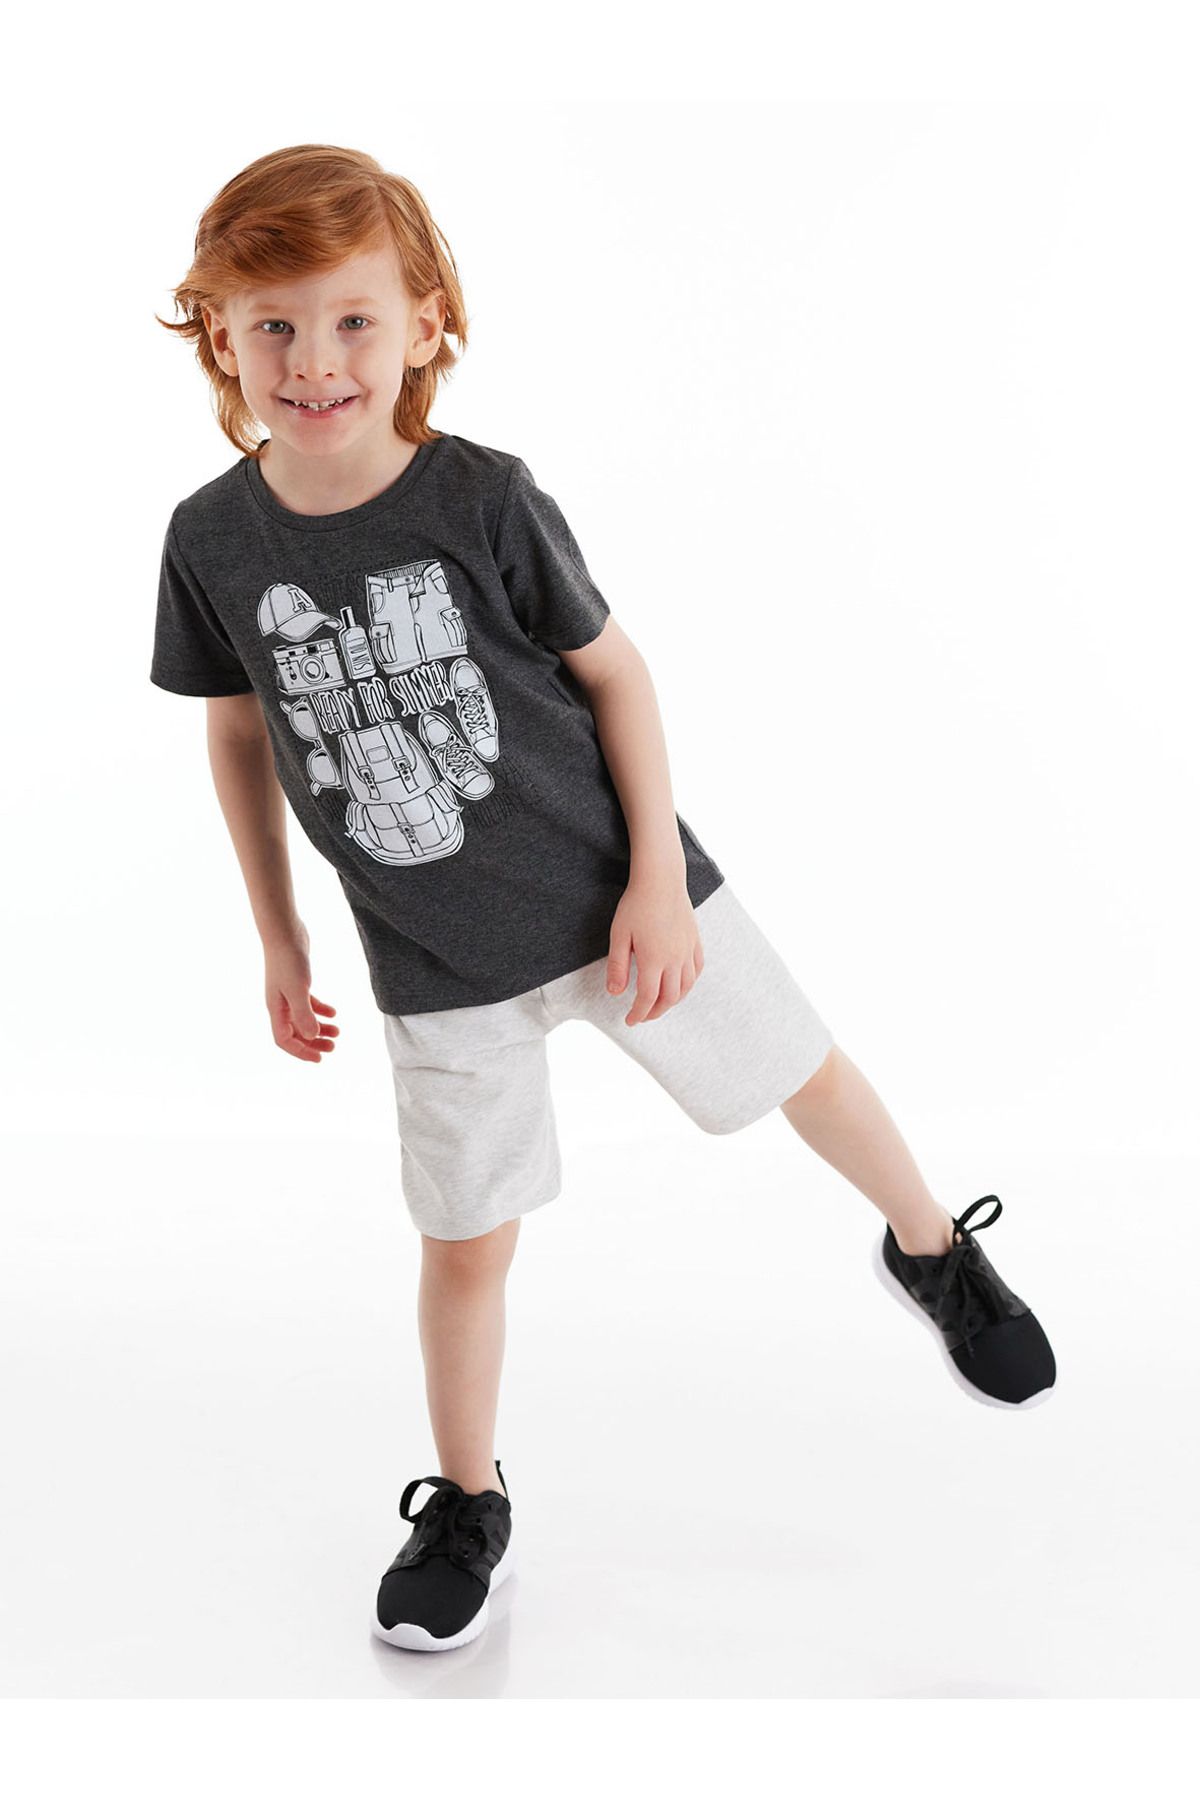 MSHB&G Holiday Erkek Çocuk T-shirt Şort Takım